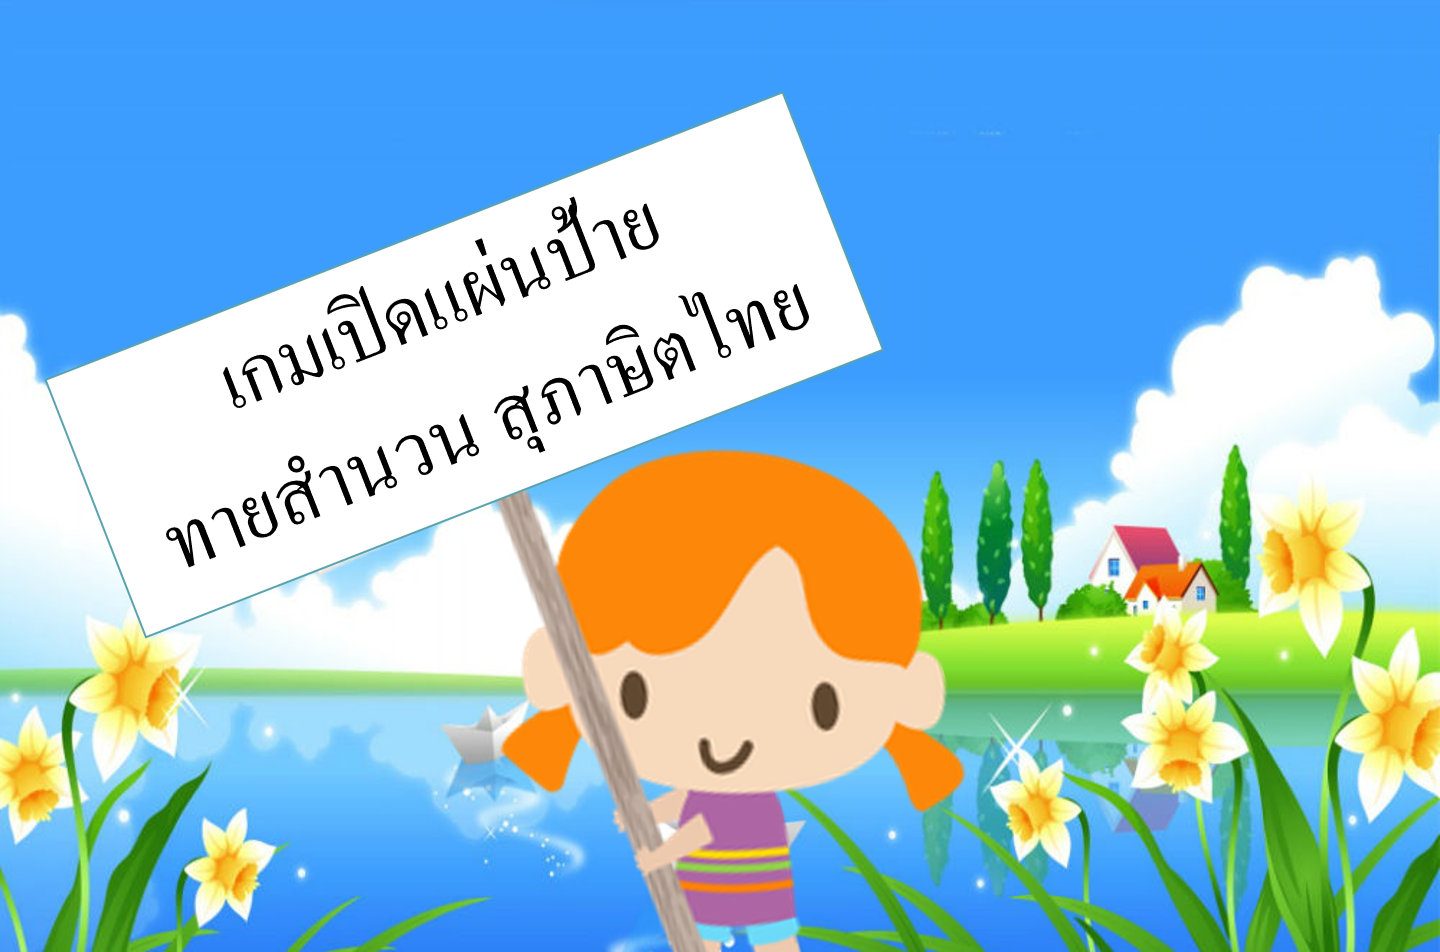 ภาพประกอบไอเดีย เกมเปิดแผ่นป้ายทายสำนวน สุภาษิตไทย